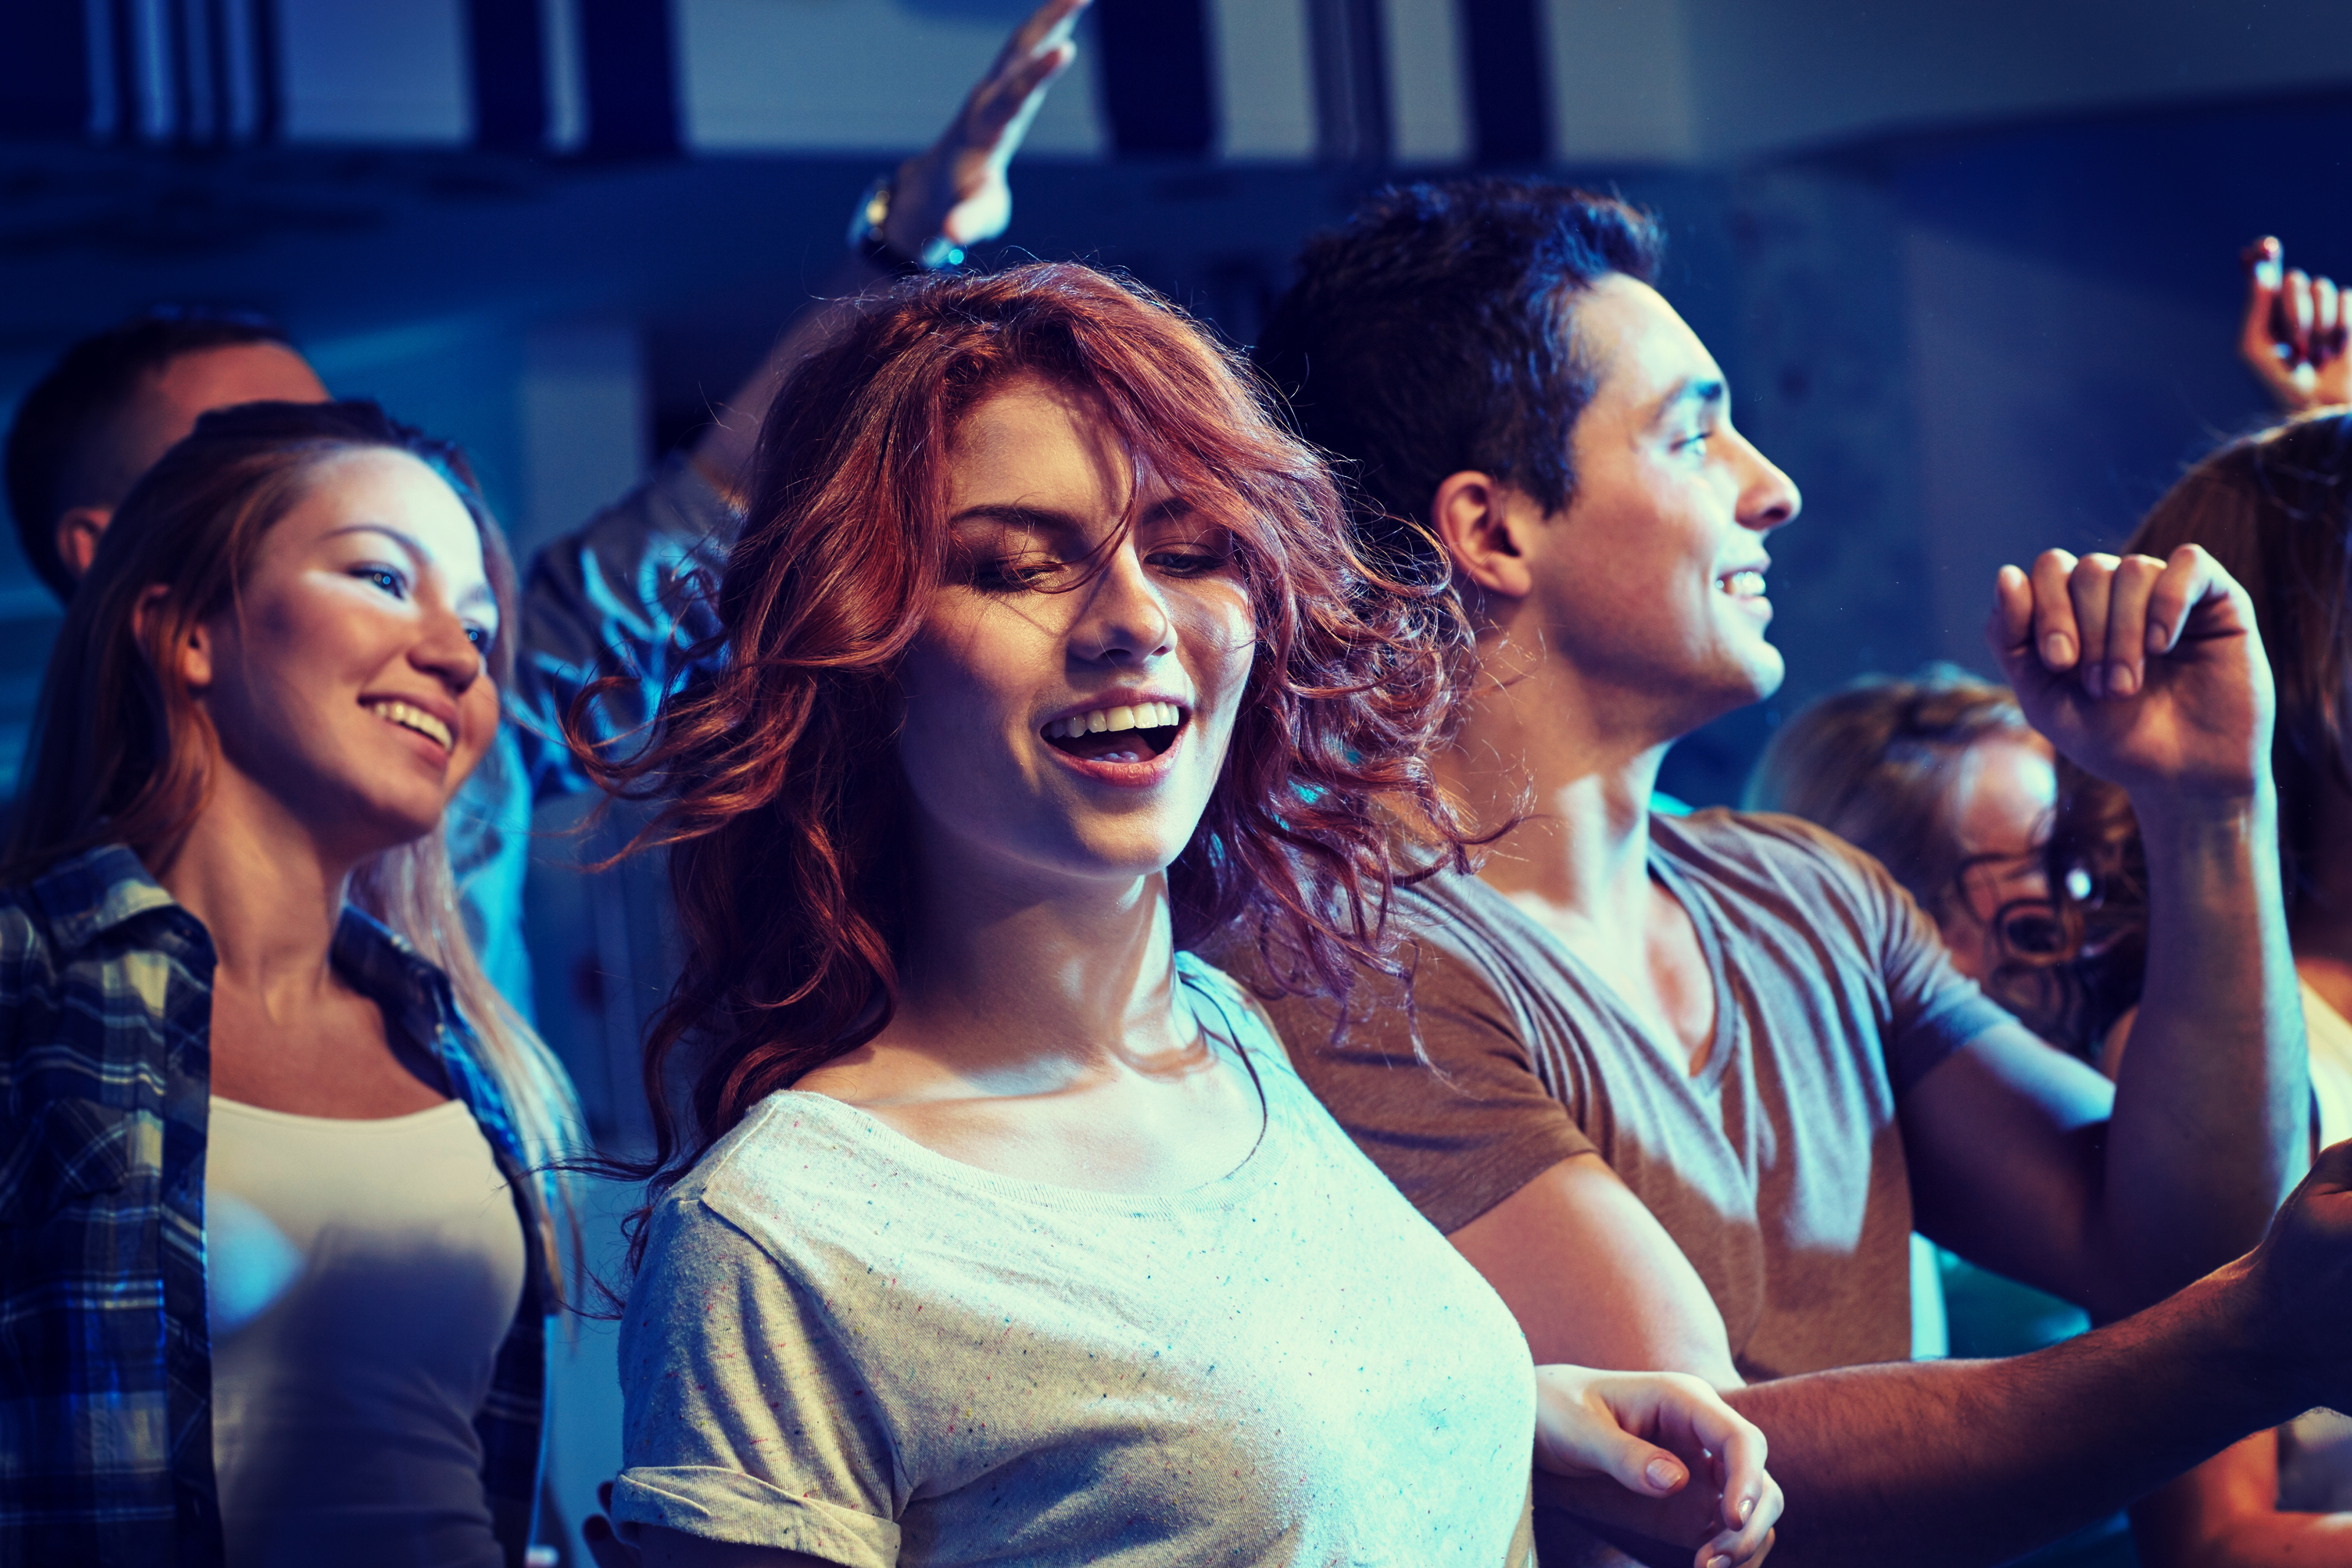 Junge Leute tanzen auf einer Party | Quelle: Shutterstock